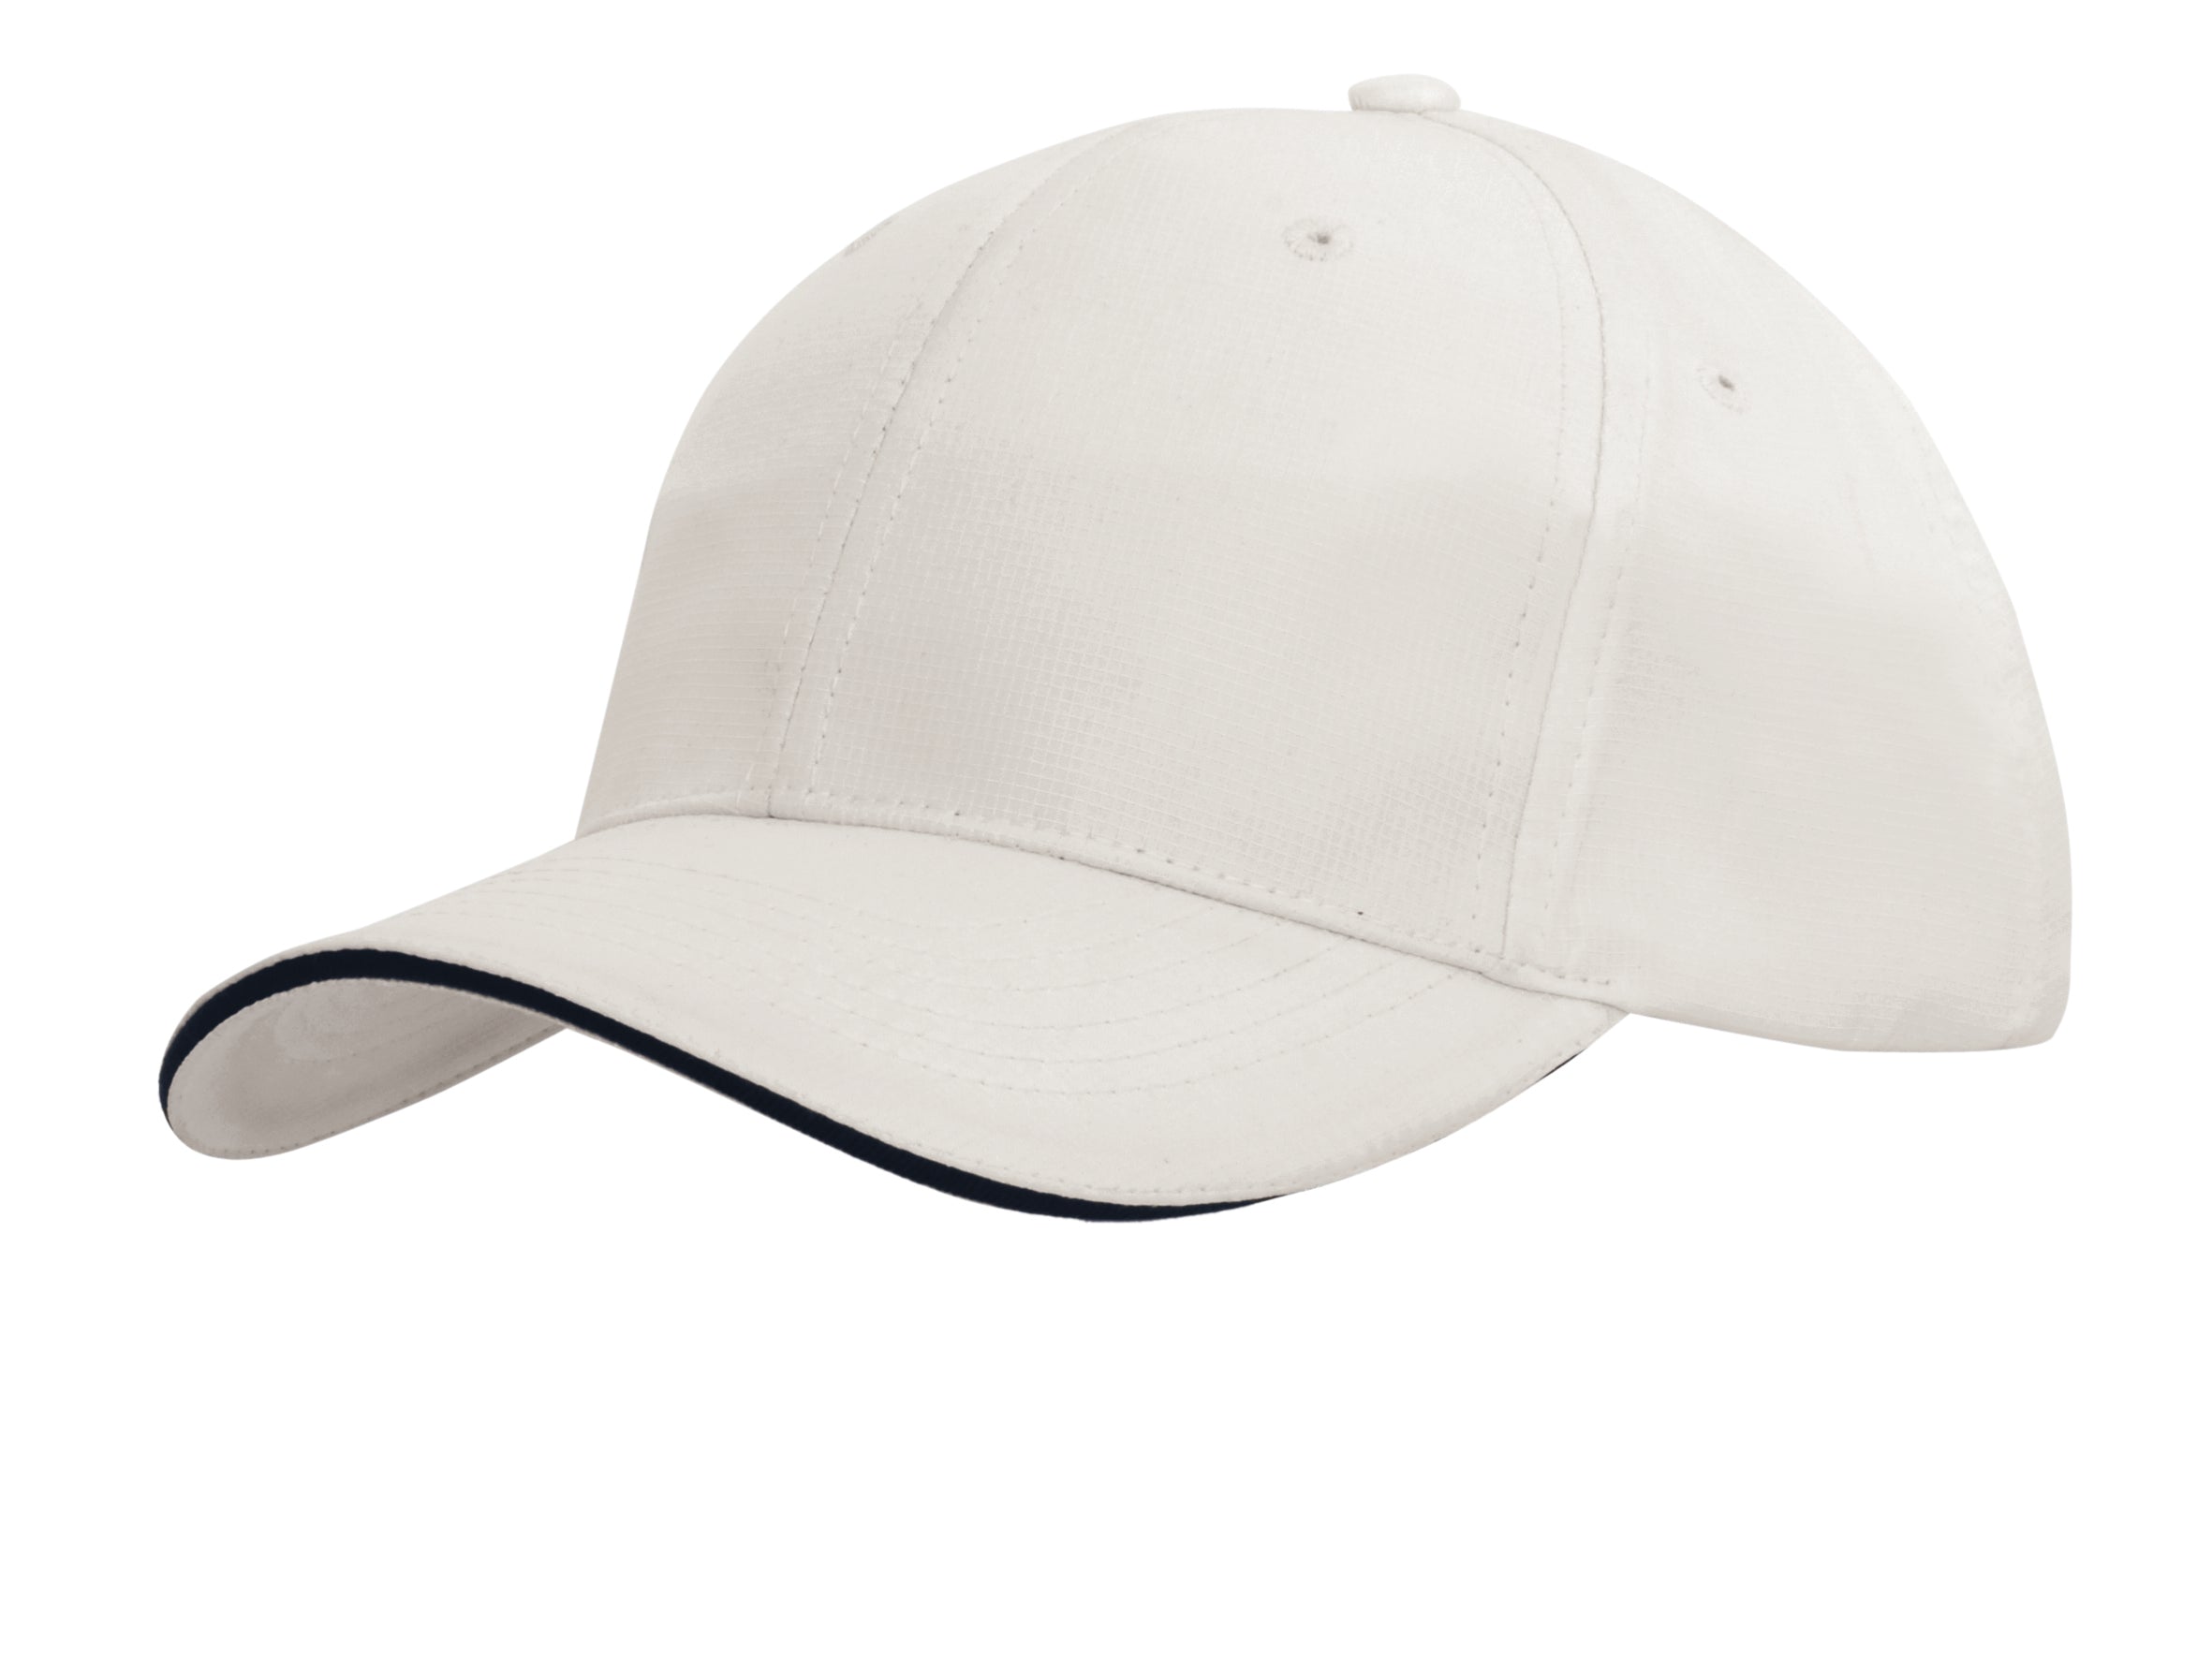 Headwear Sports Ripstop W/sandwich X12 - 4149 Cap Headwear Professionals White/Navy One Size 